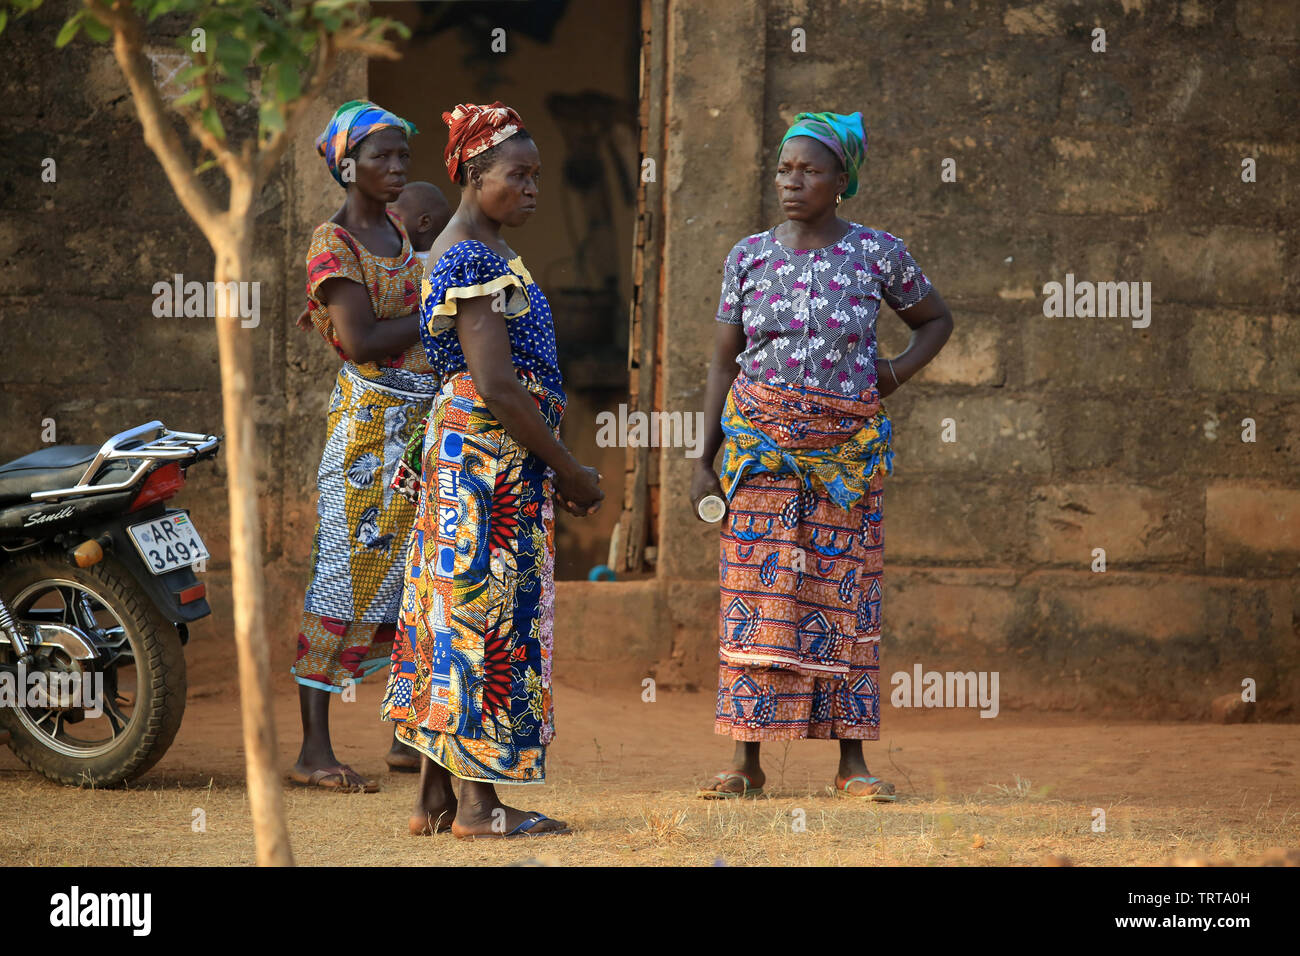 Femmes togolaises discutant ensemble.Togo. Afrique de l'Ouest. Stock Photo